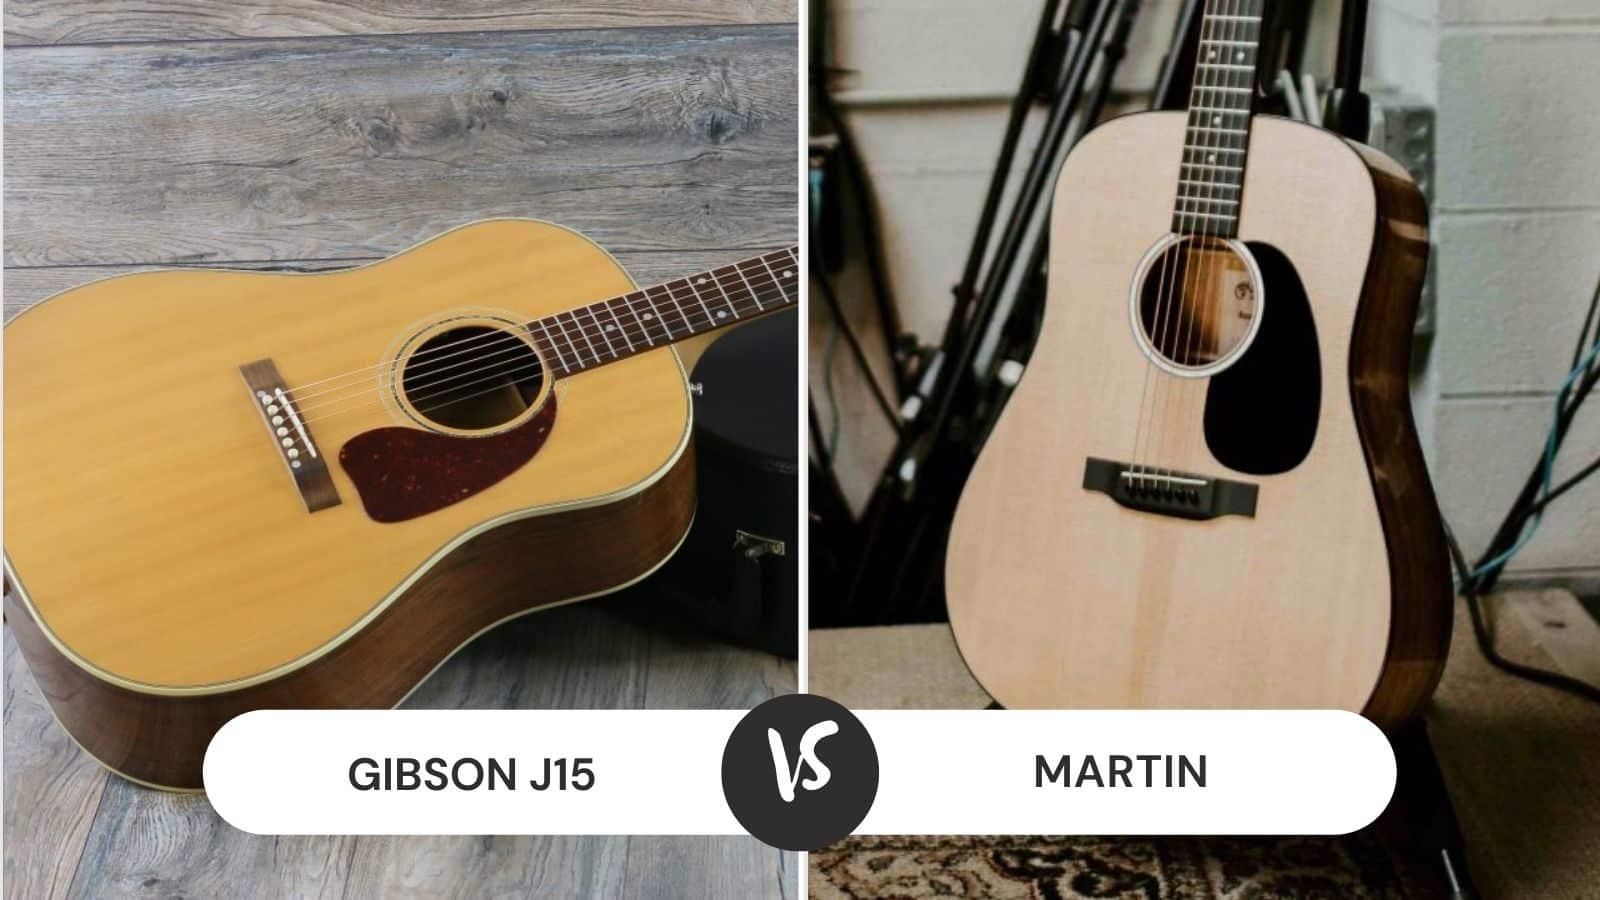 Gibson J15 vs Martin